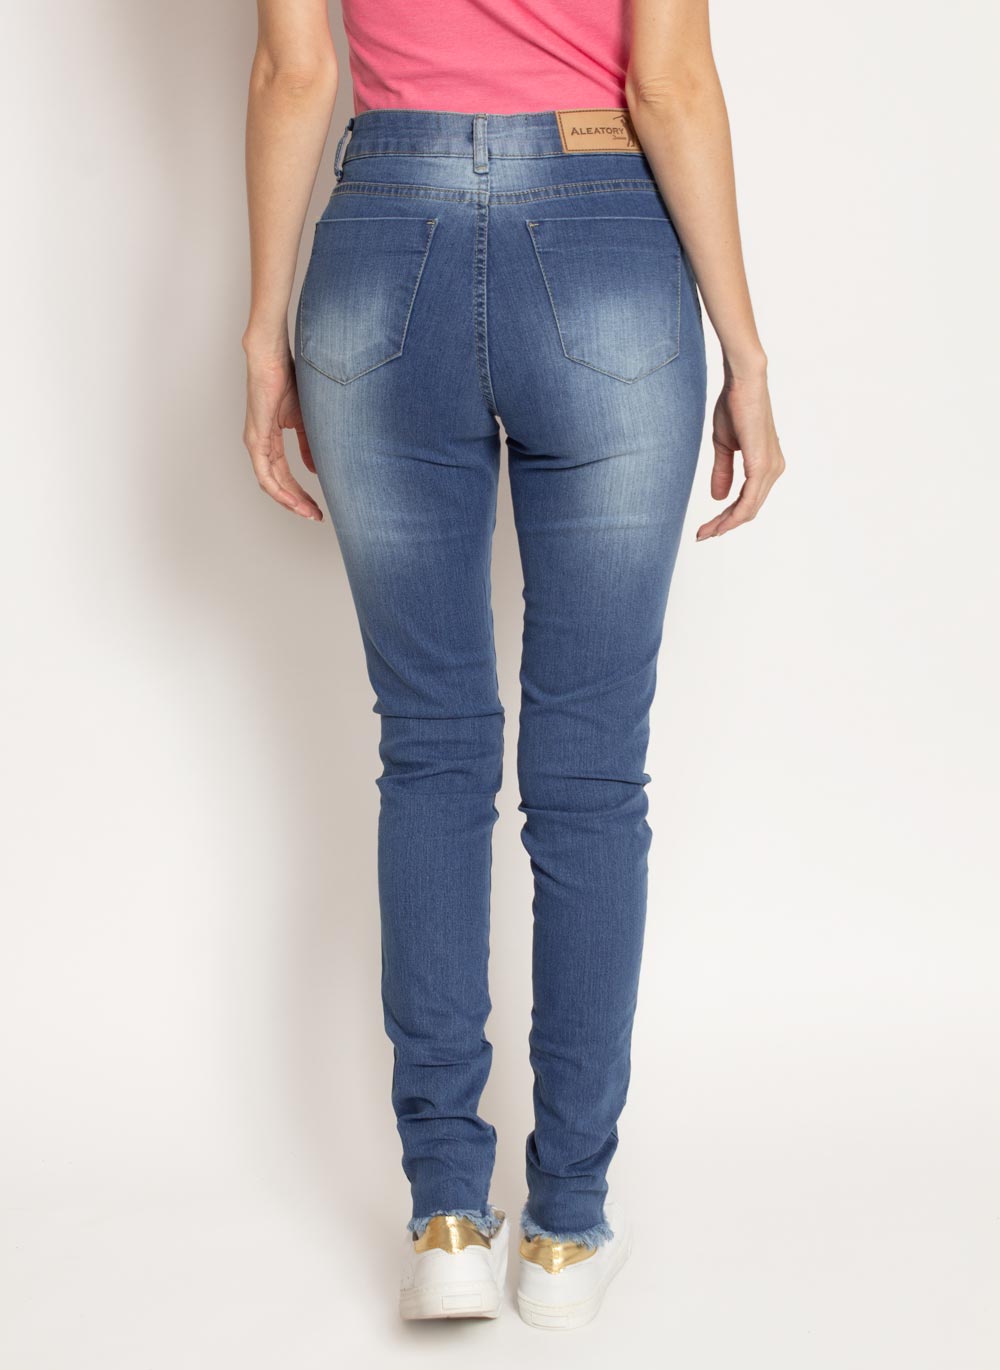 calca-aleatory-feminina-jeans-sofy-modelo-3-